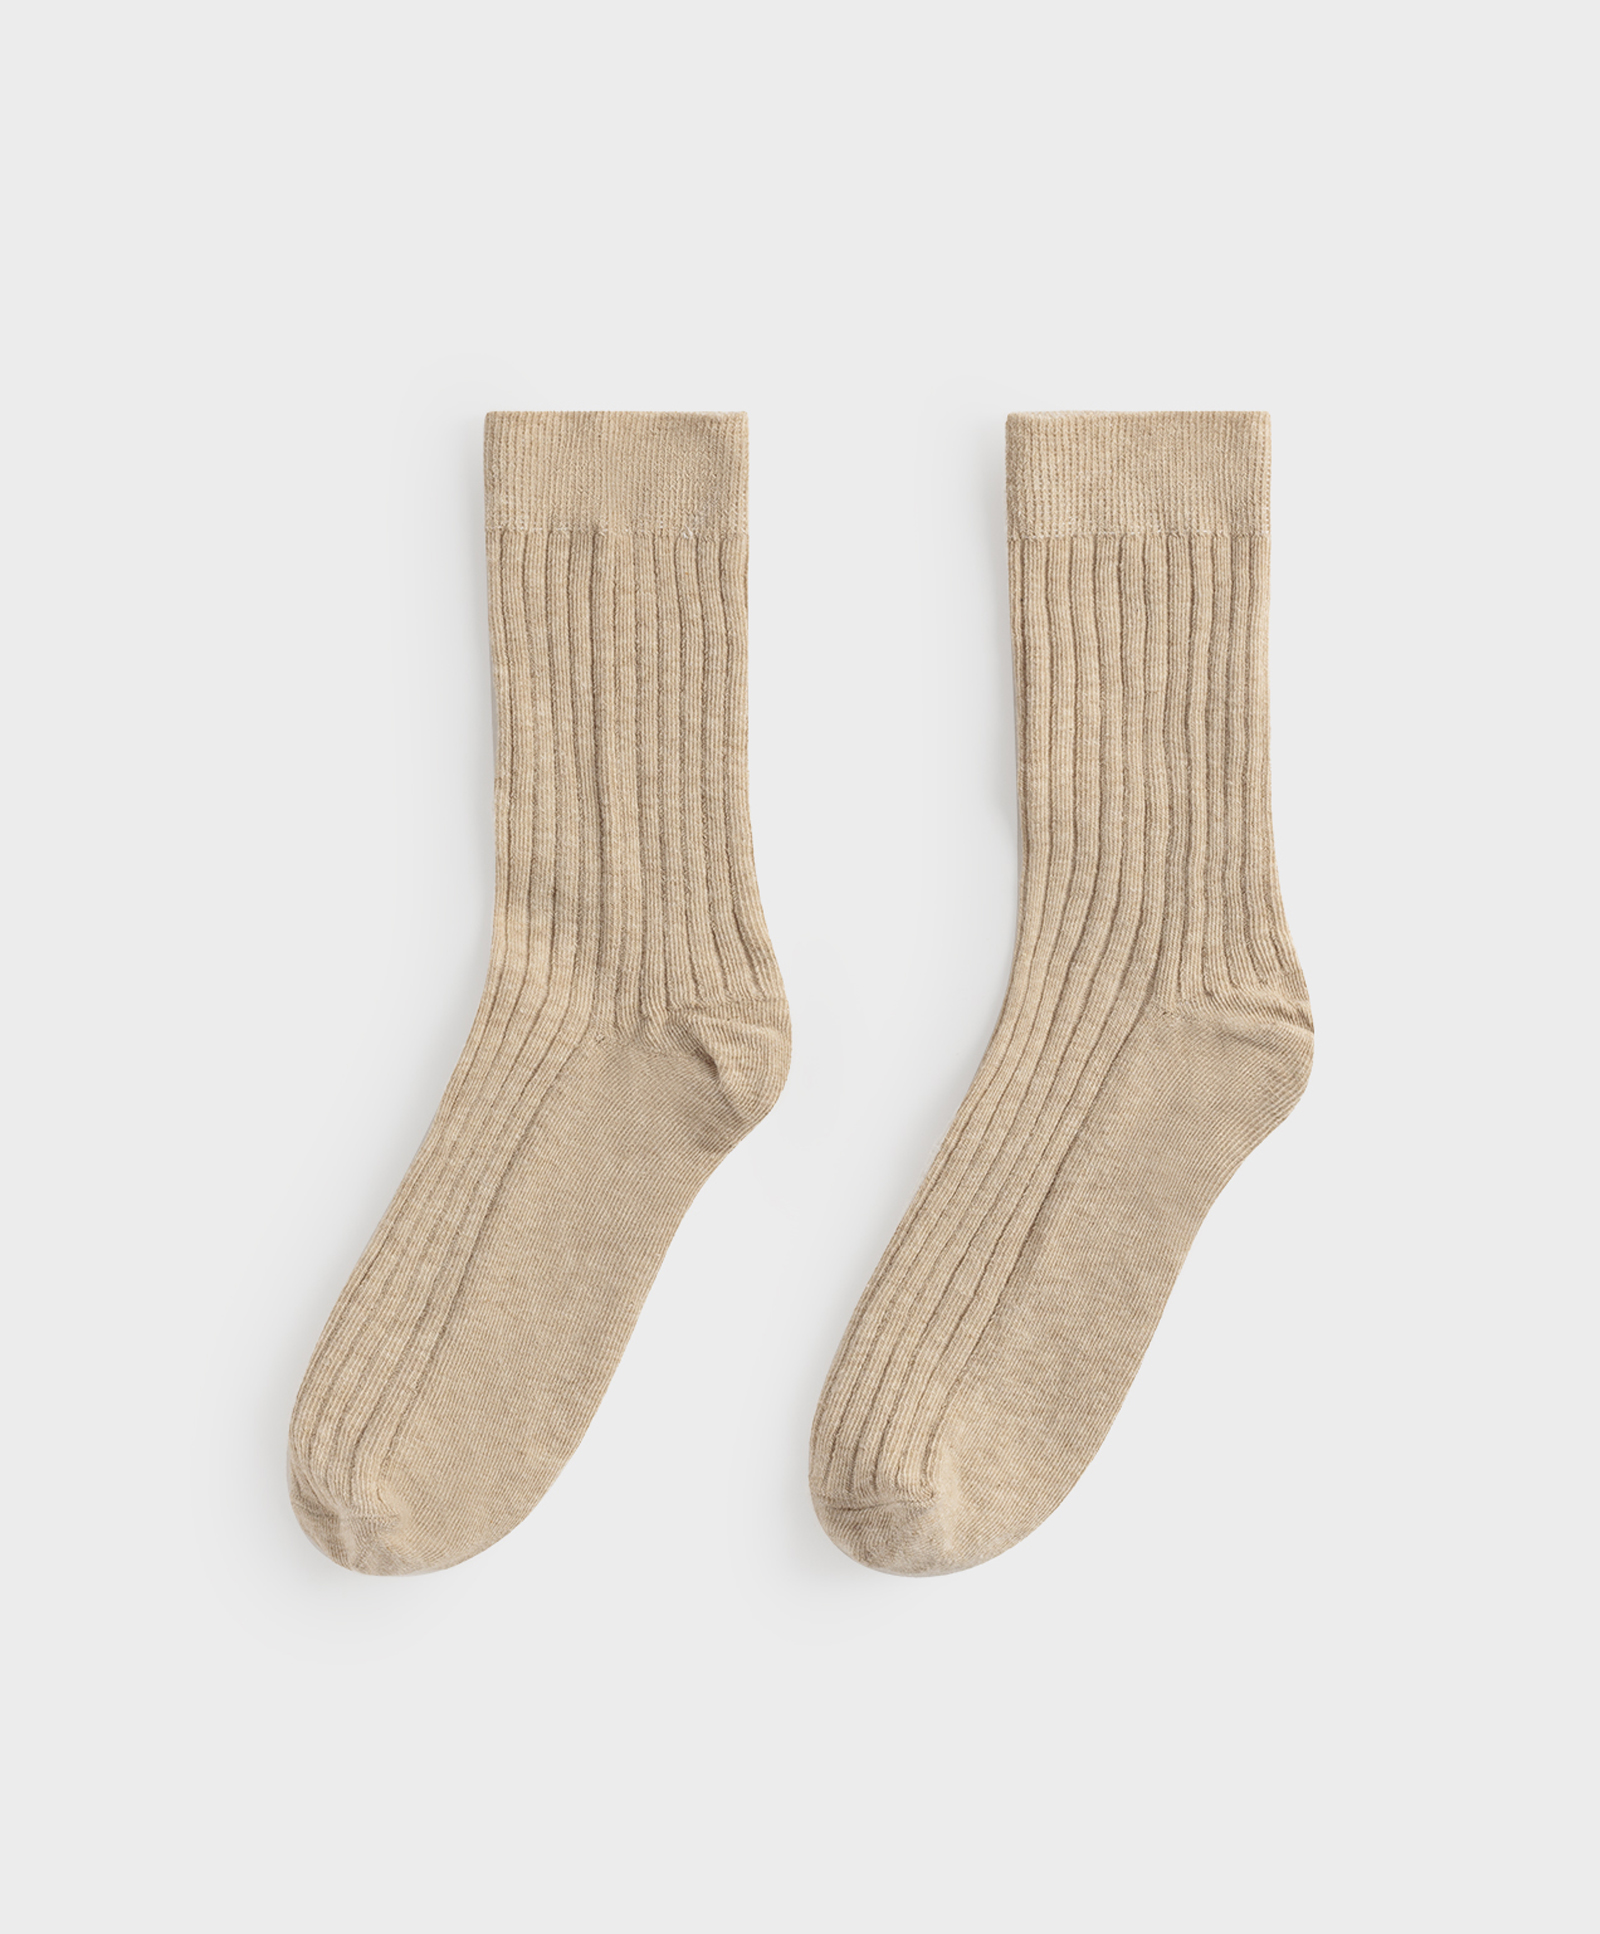 Rebraste pamučne čarape srednje dužine